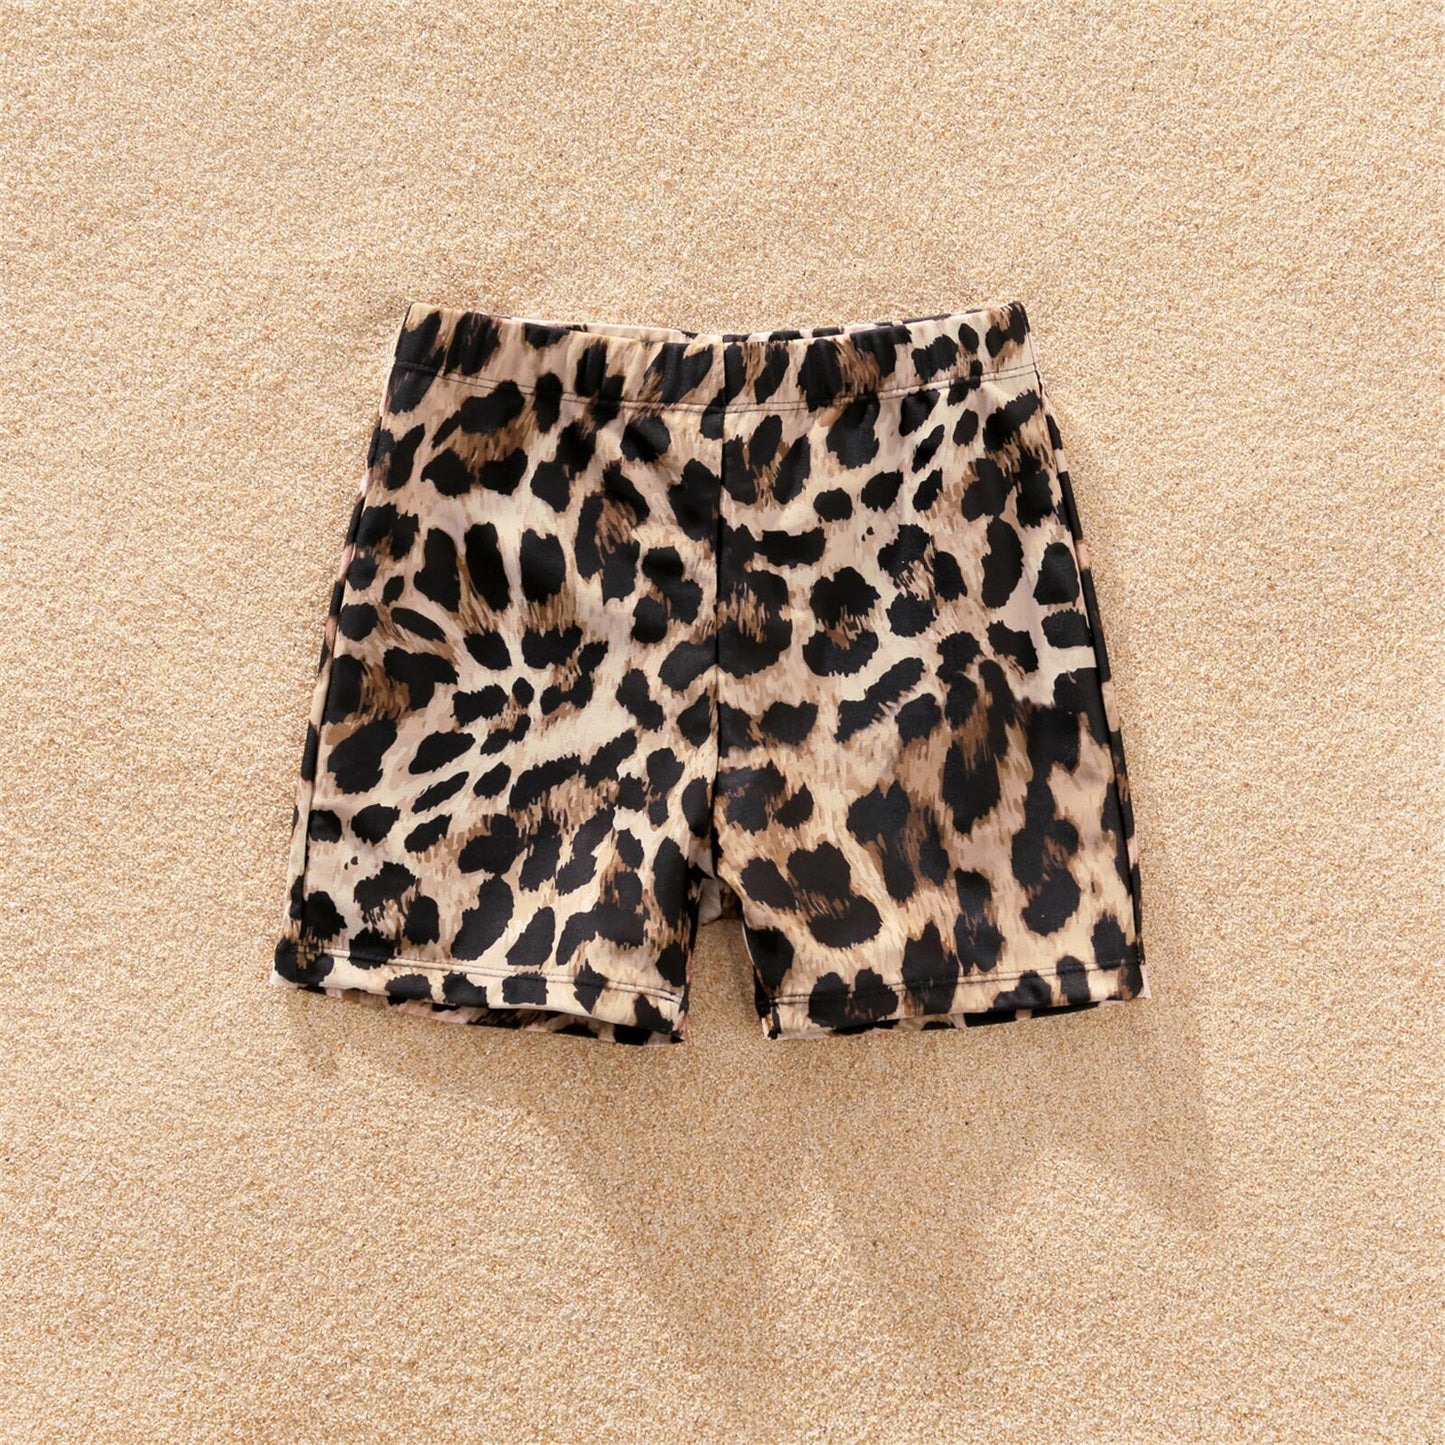 PatPat Family Matching Spaghetti Strap Bikini Set Swimwear and Leopard Swim Trunks Shorts